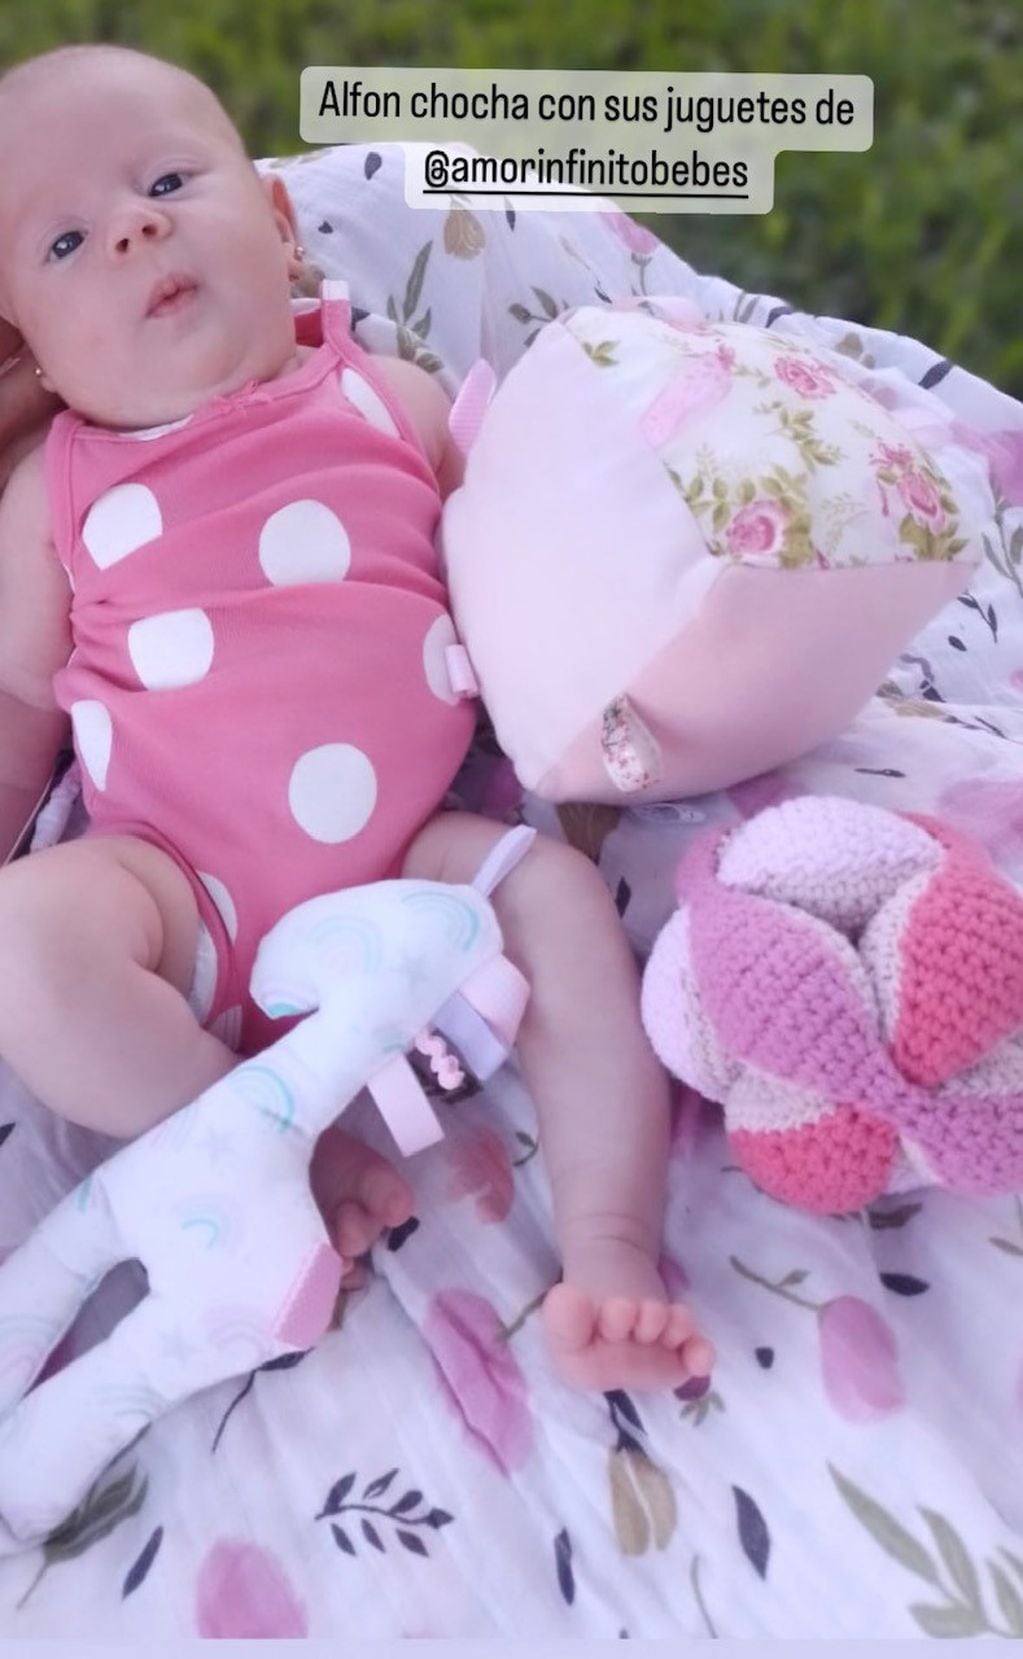 La beba combina sus bodys con juguetes en el mismo tono rosa.